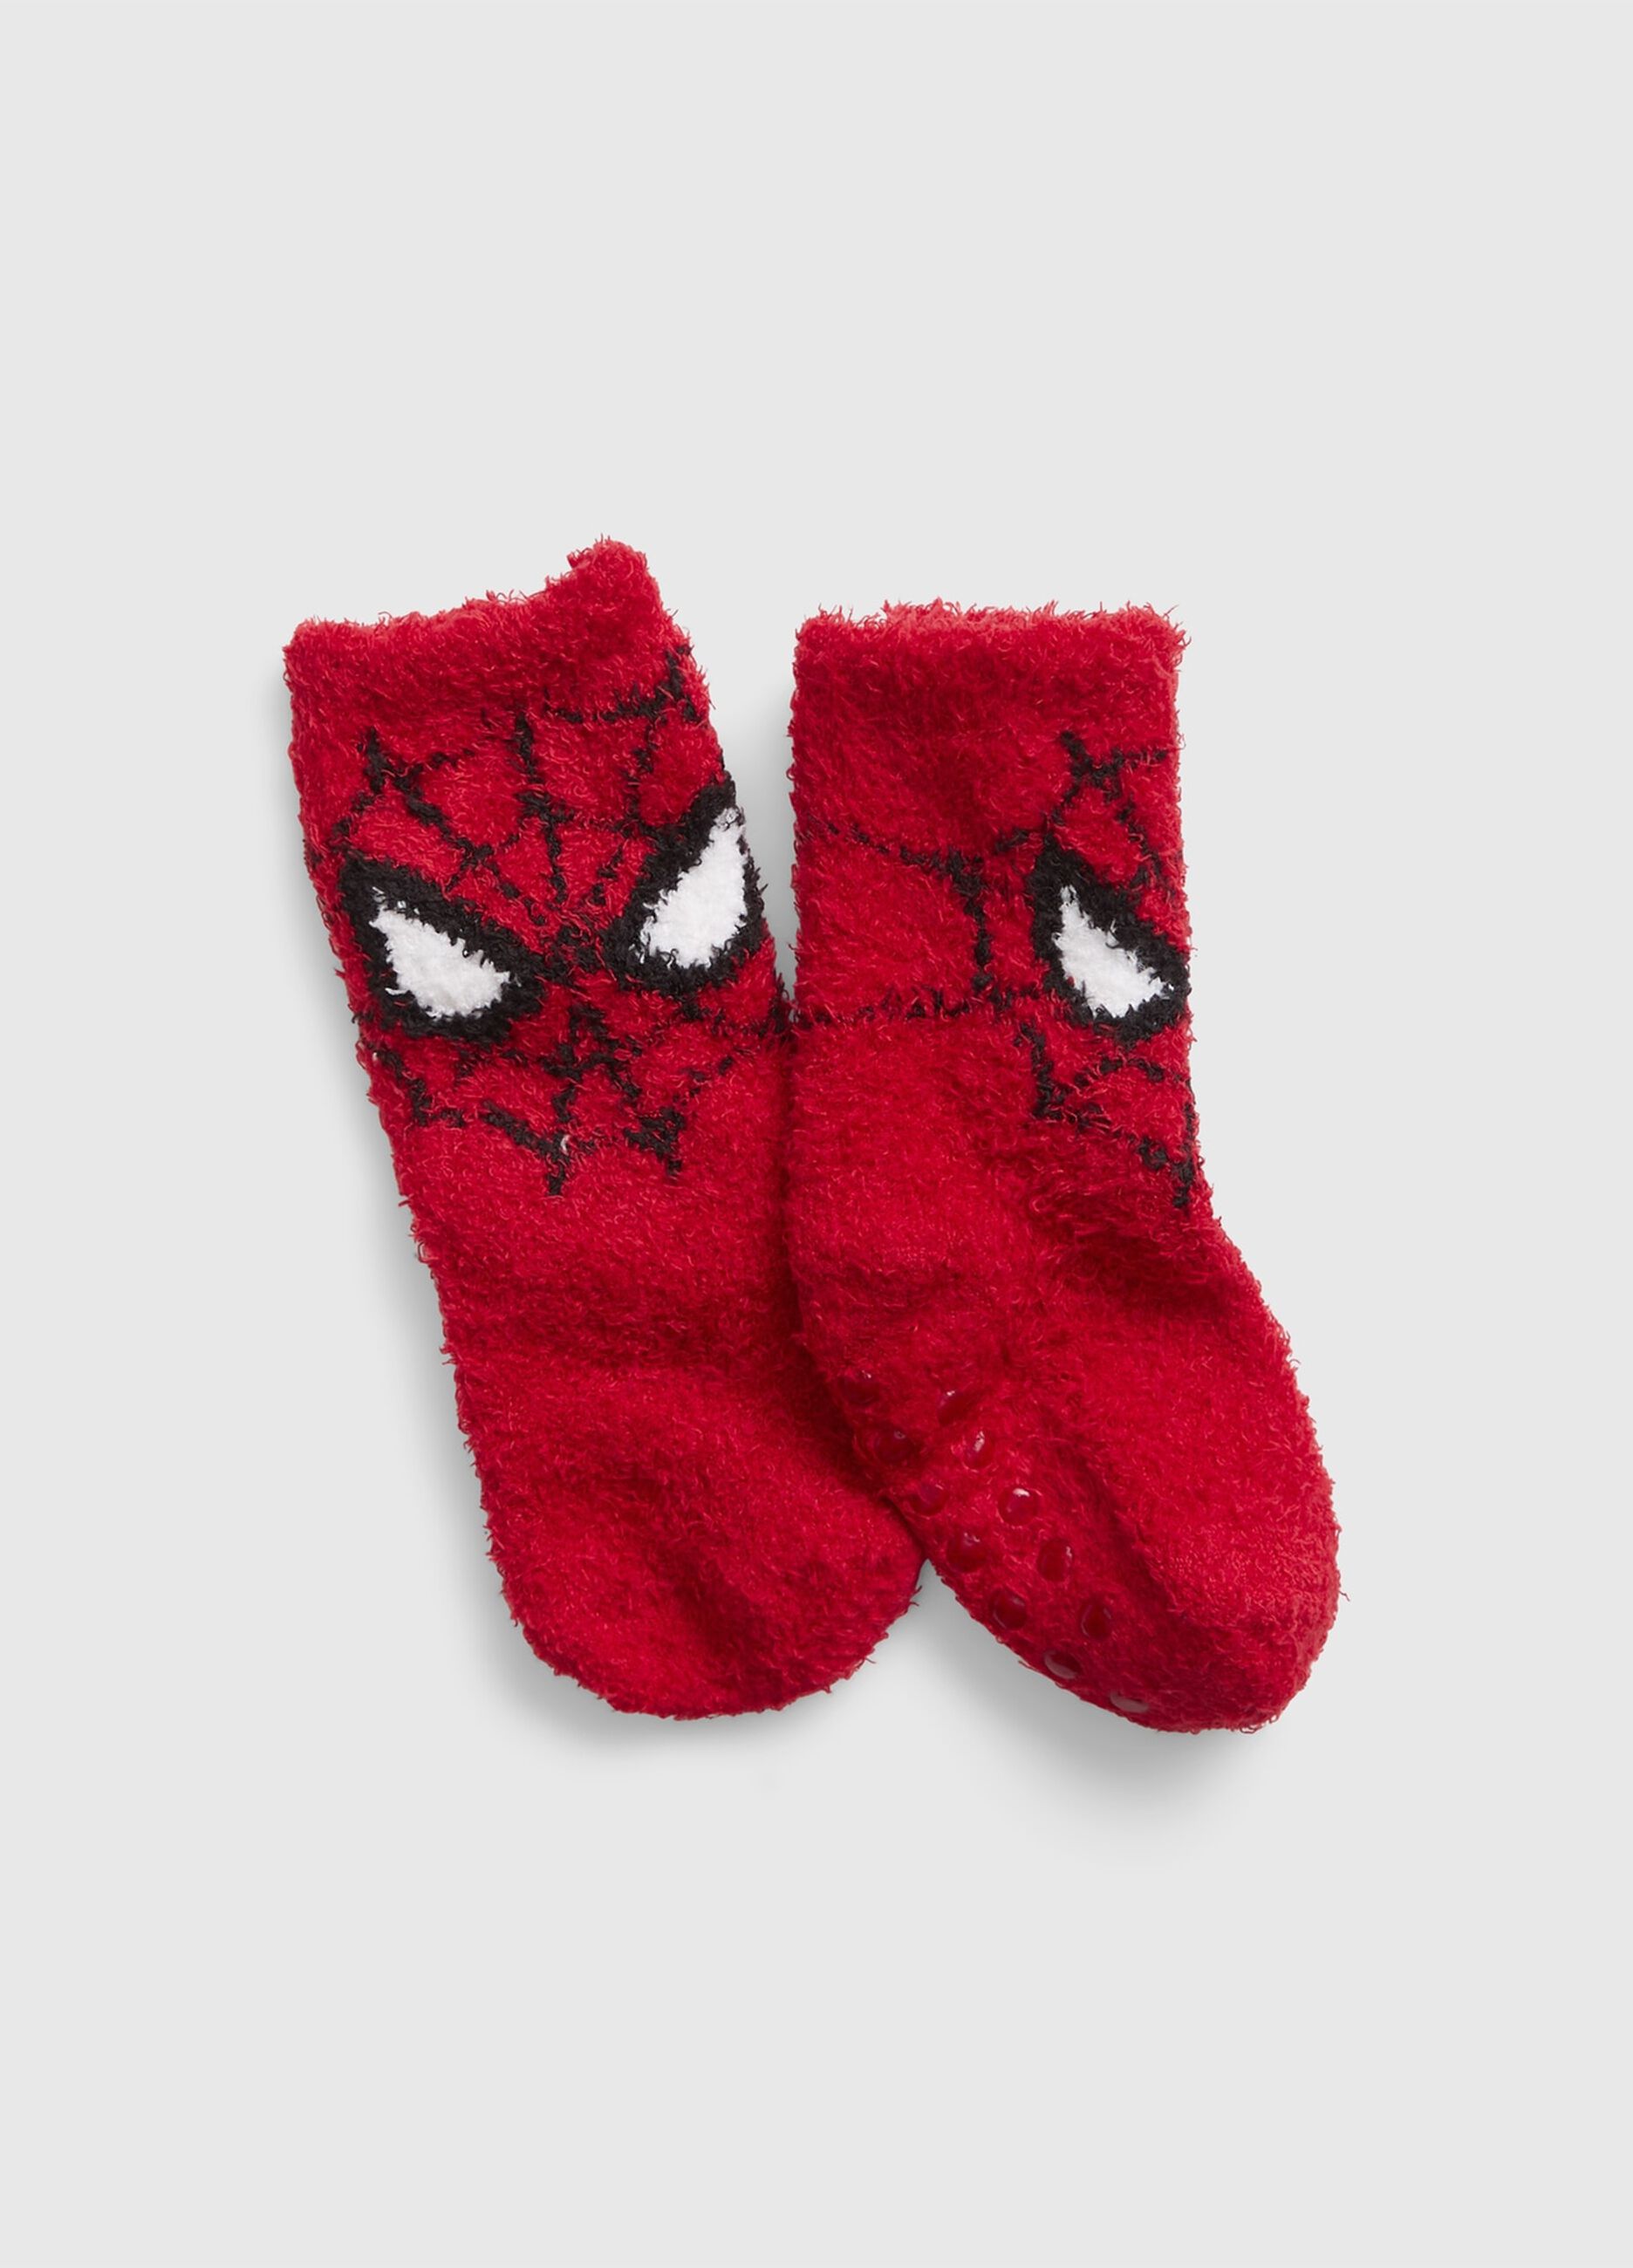 Slipper socks with Marvel Spider-Man design